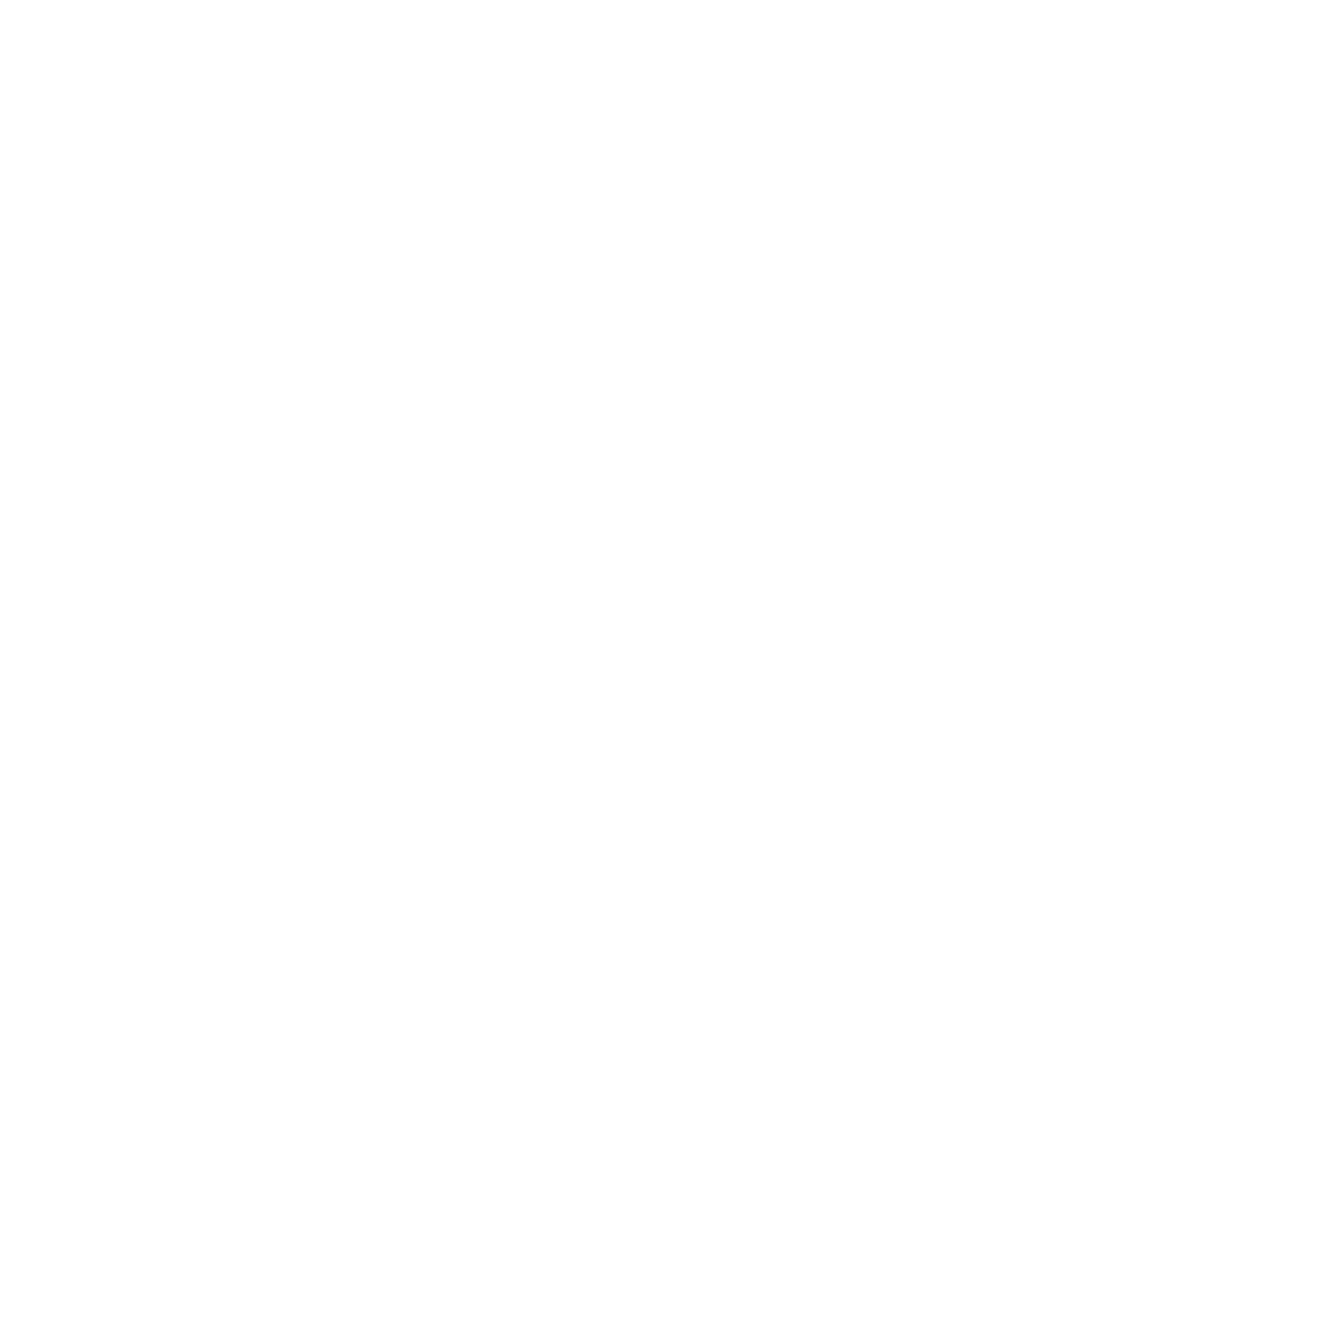 dinner hero 800 square